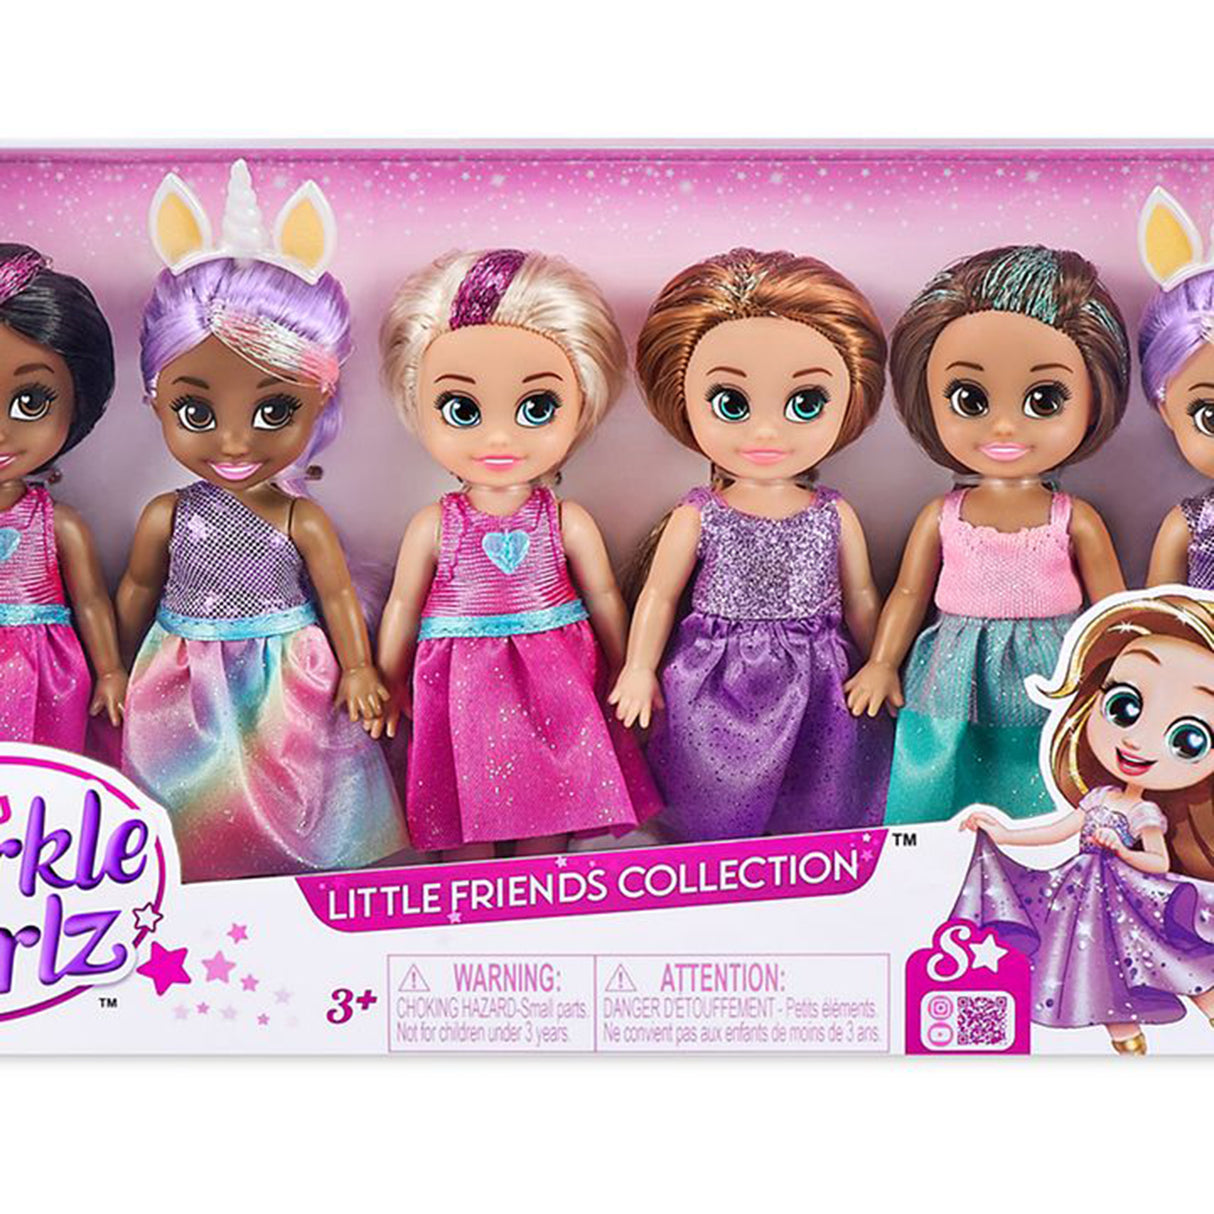 Sparkle Girlz Princess Dolls (4.7 inches) – Toys R Us Australia